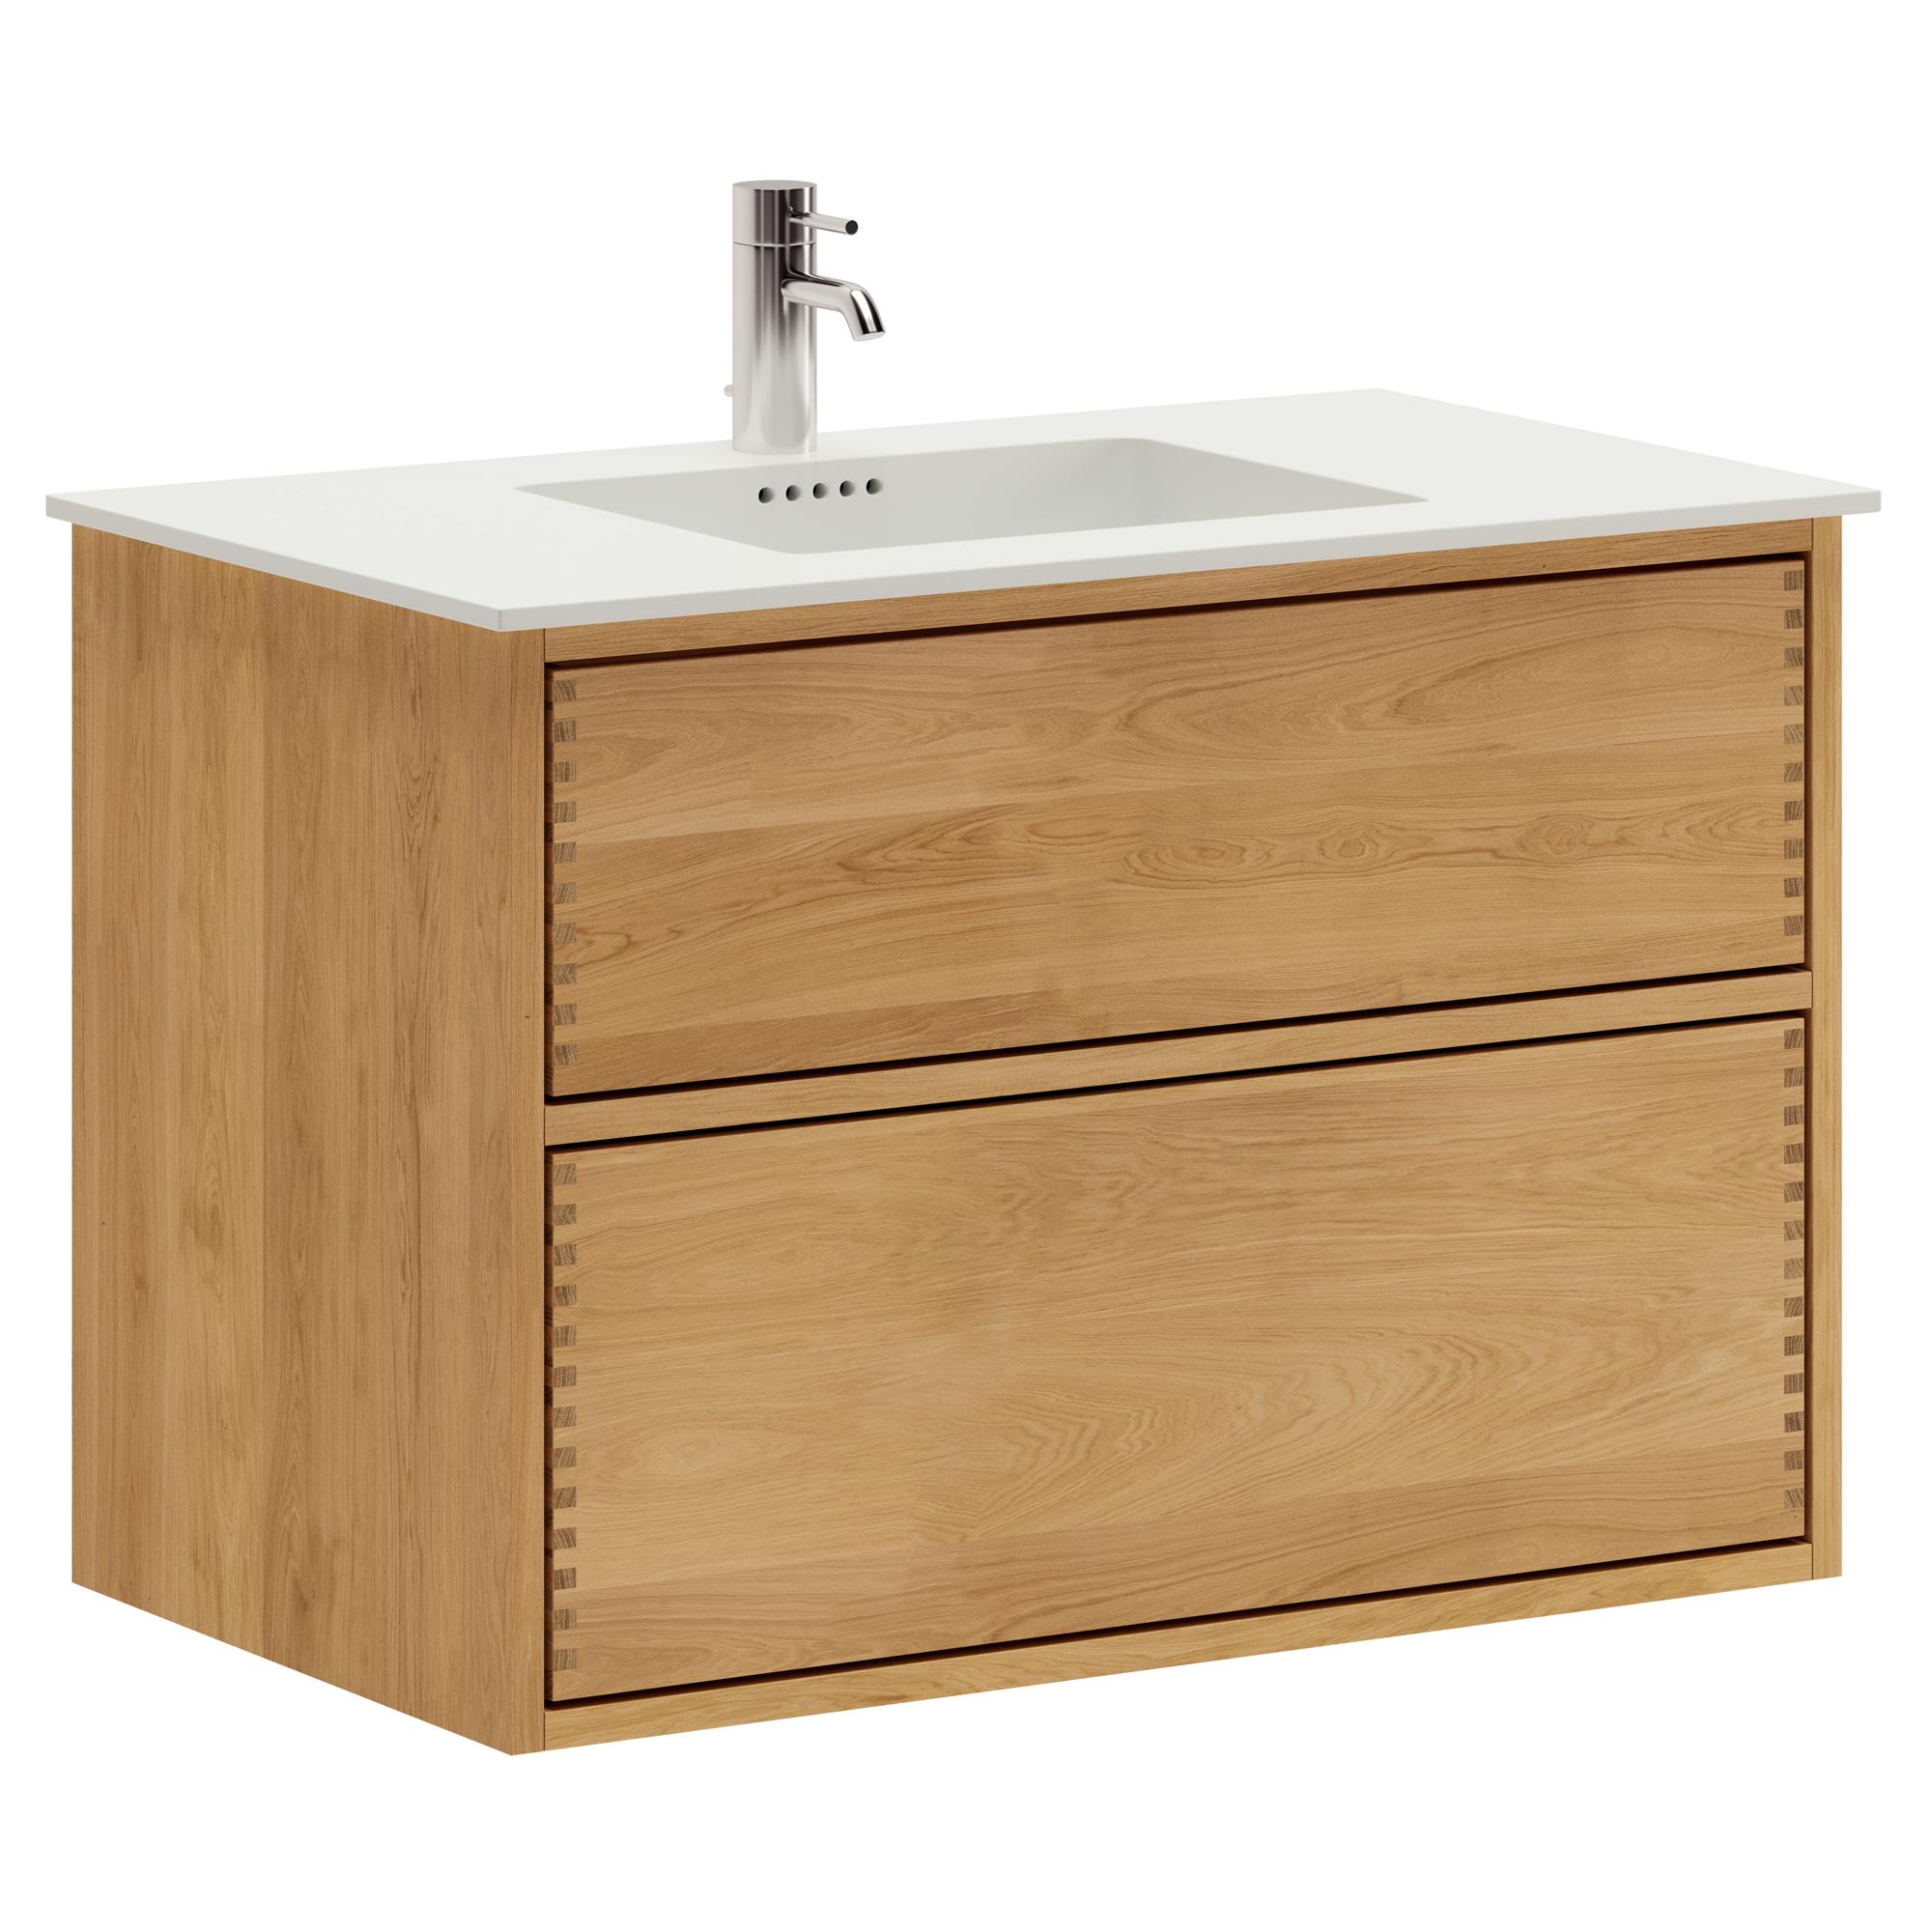 80 cm Just Wood Push Badezimmermöbel mit 2 Schubladen und Solid Surface-Waschbecken